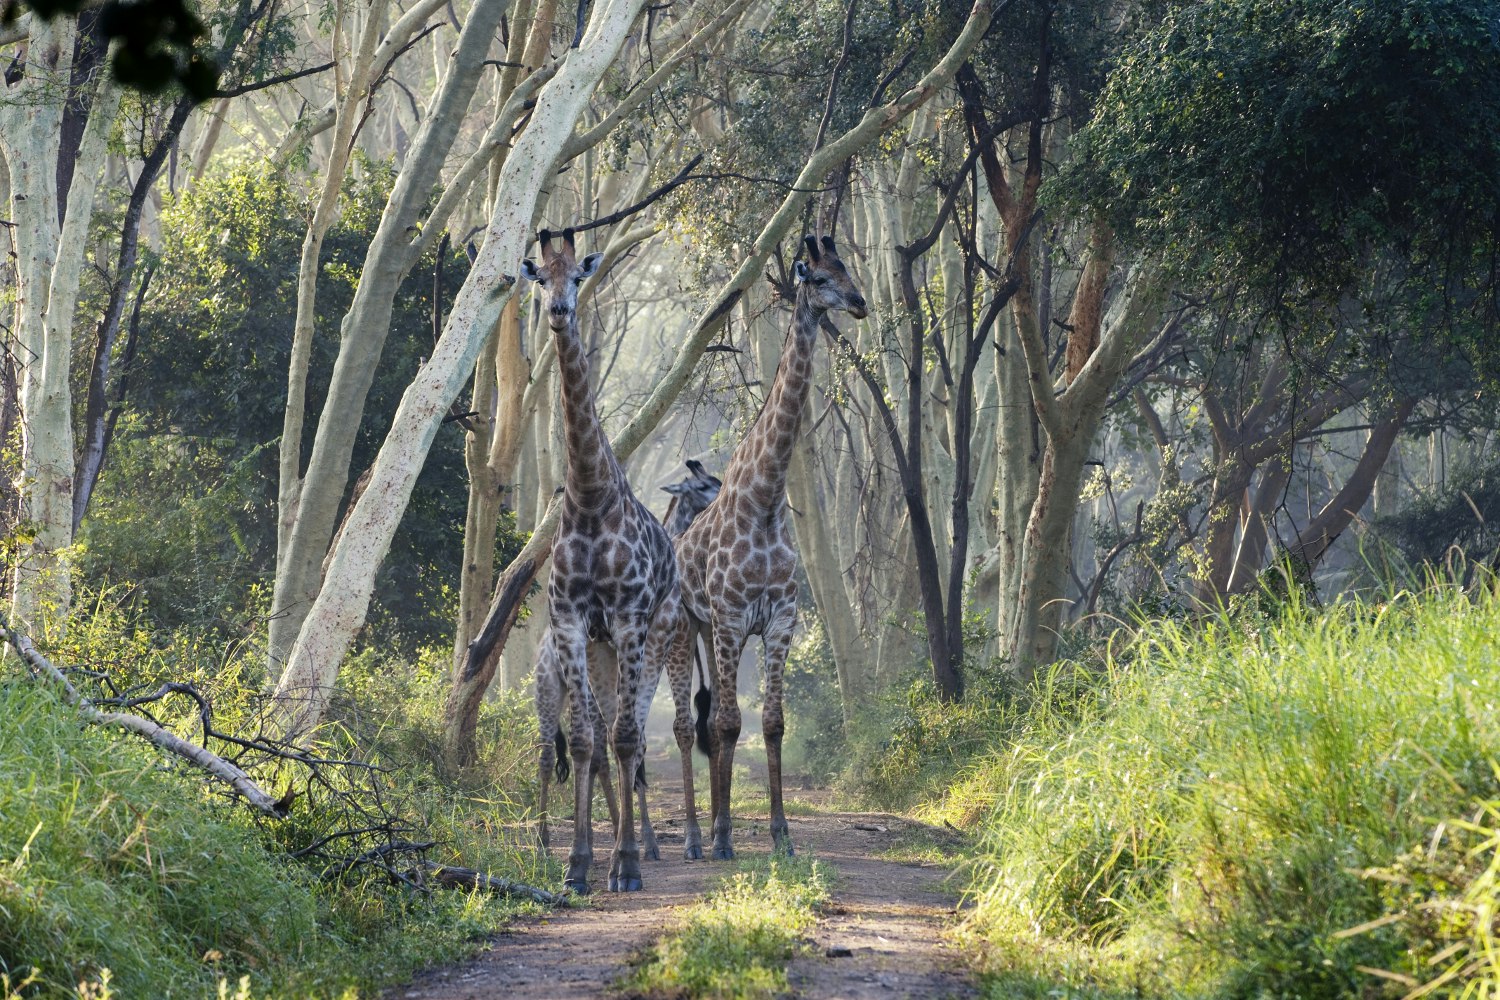 Giraffe, Nyala Park, Malawi